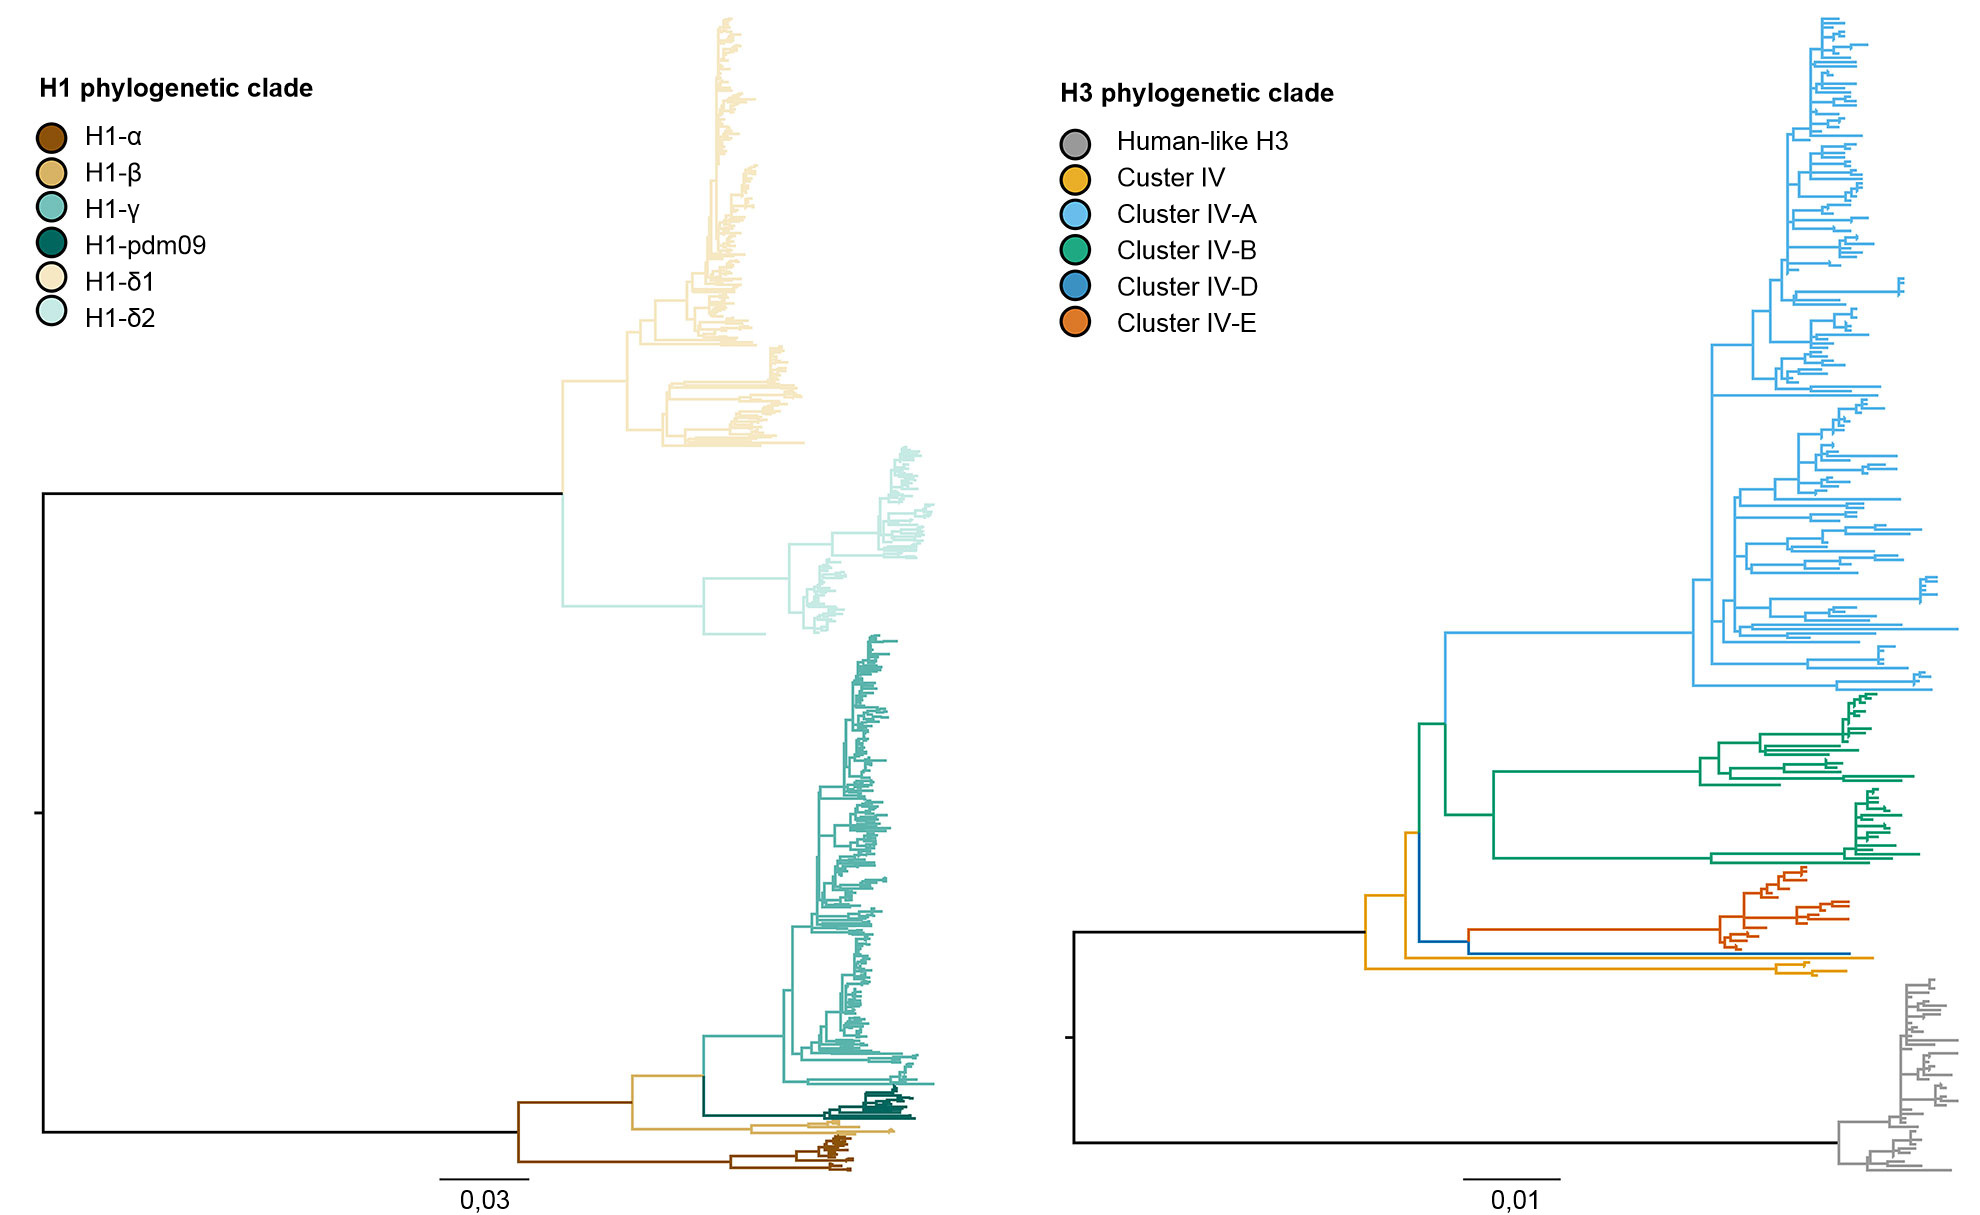 Árbol filogenético que describe las relaciones genéticas entre secuencias génicas de la hemaglutinina de la influenza A porcina H1 y H3 de 2015 generadas usando métodos de máxima verosimilitud